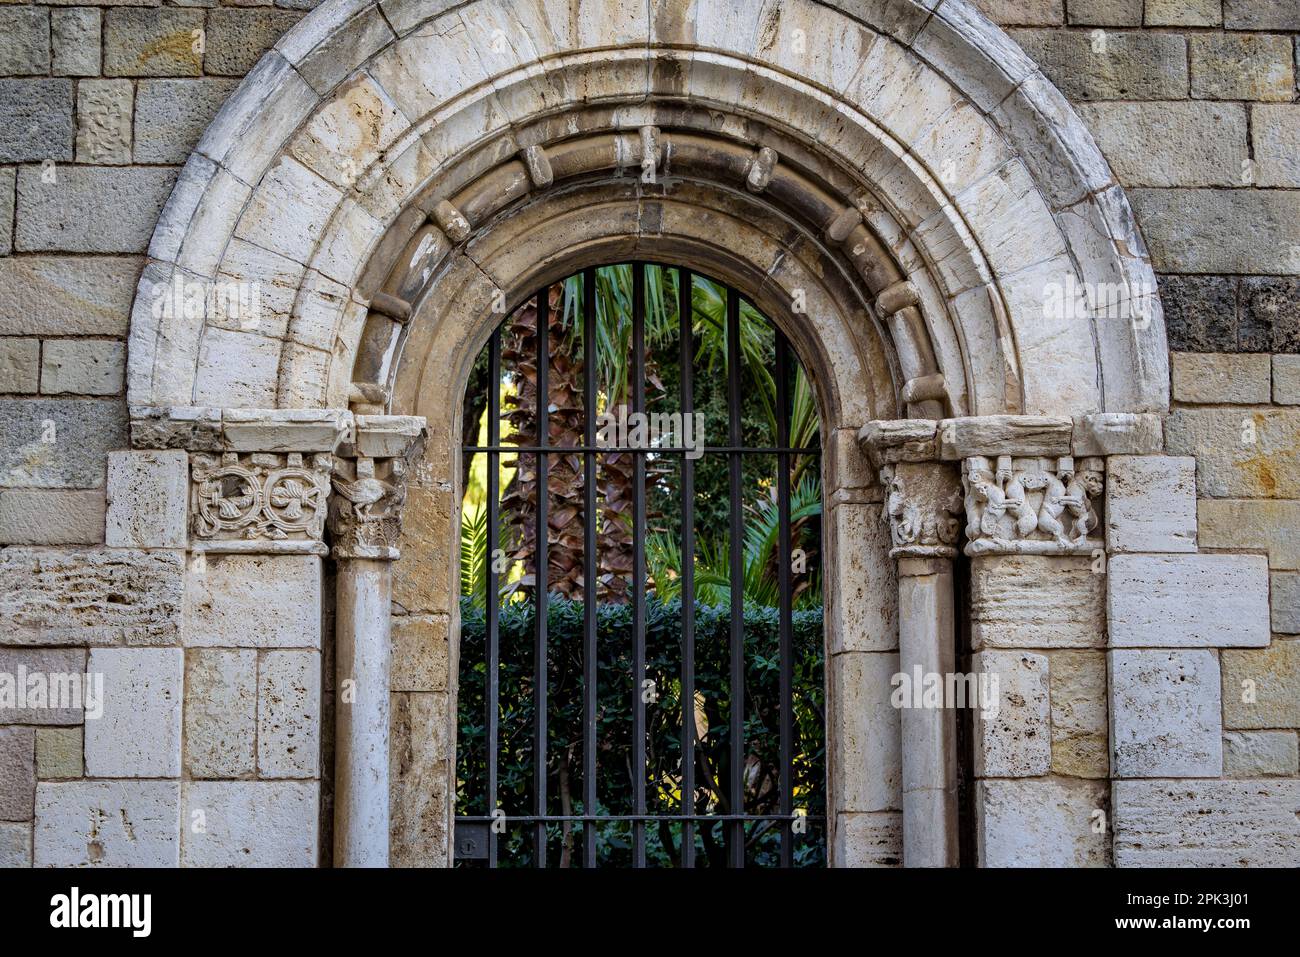 Particolare di una porta del Monastero di Pedralbes (Barcellona, Catalogna, Spagna) ESP: Detalle de una puerta del Monasterio de Pedralbes, Barcellona, España Foto Stock